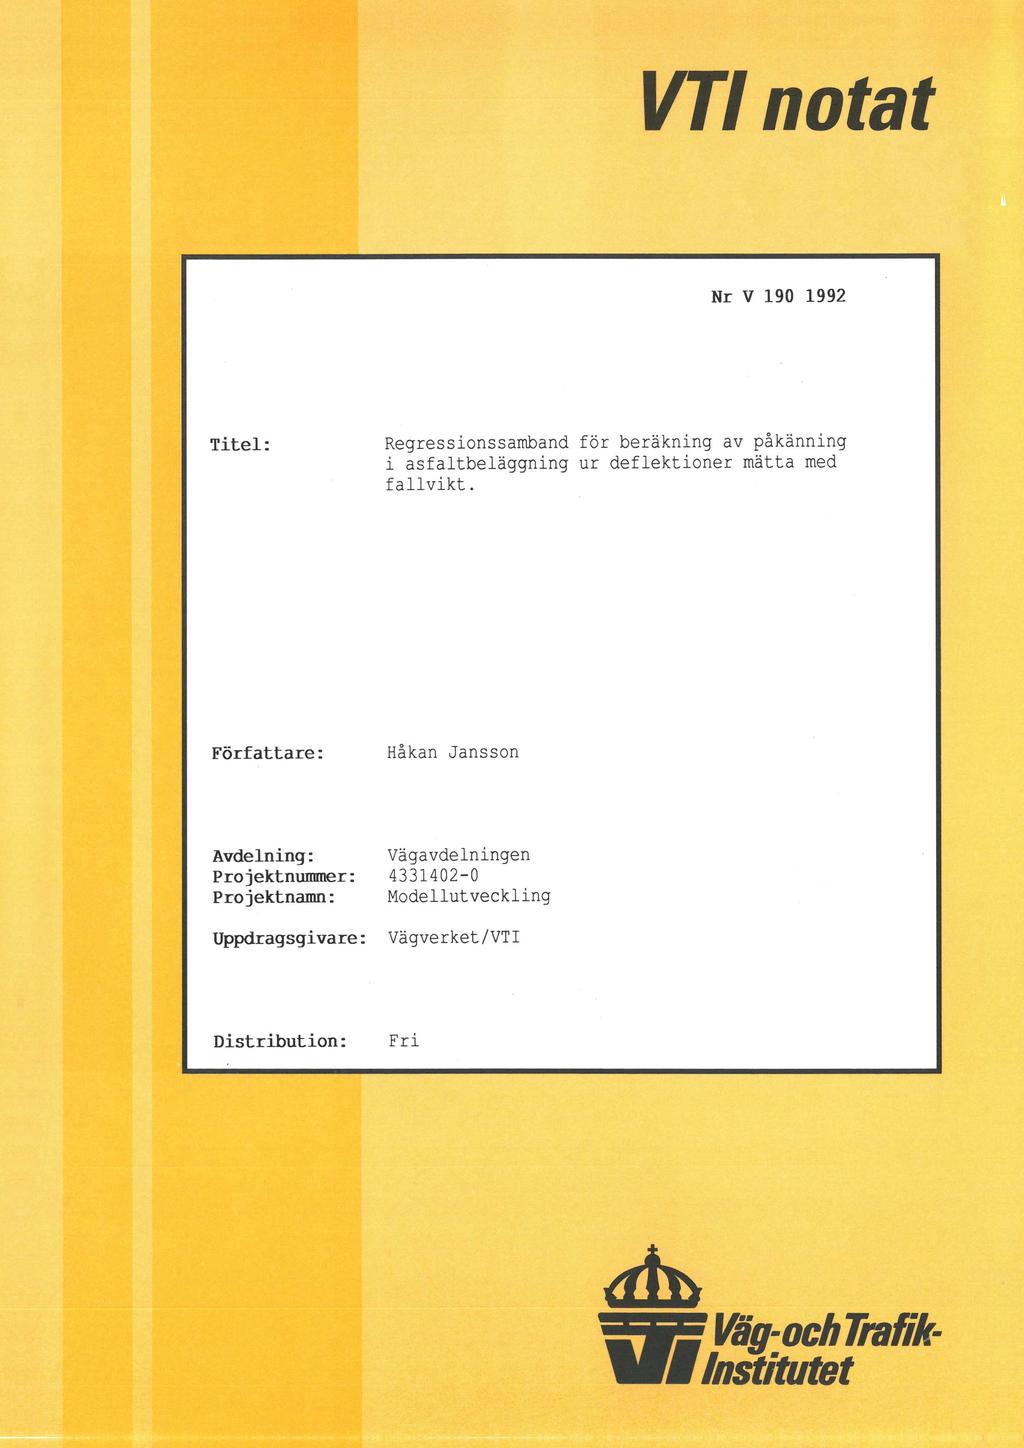 VT notat Nr V 190 1992 Titel: Regressionssamband för beräkning av påkänning i asfaltbeläggning ur deflektioner mätta med fallvikt.